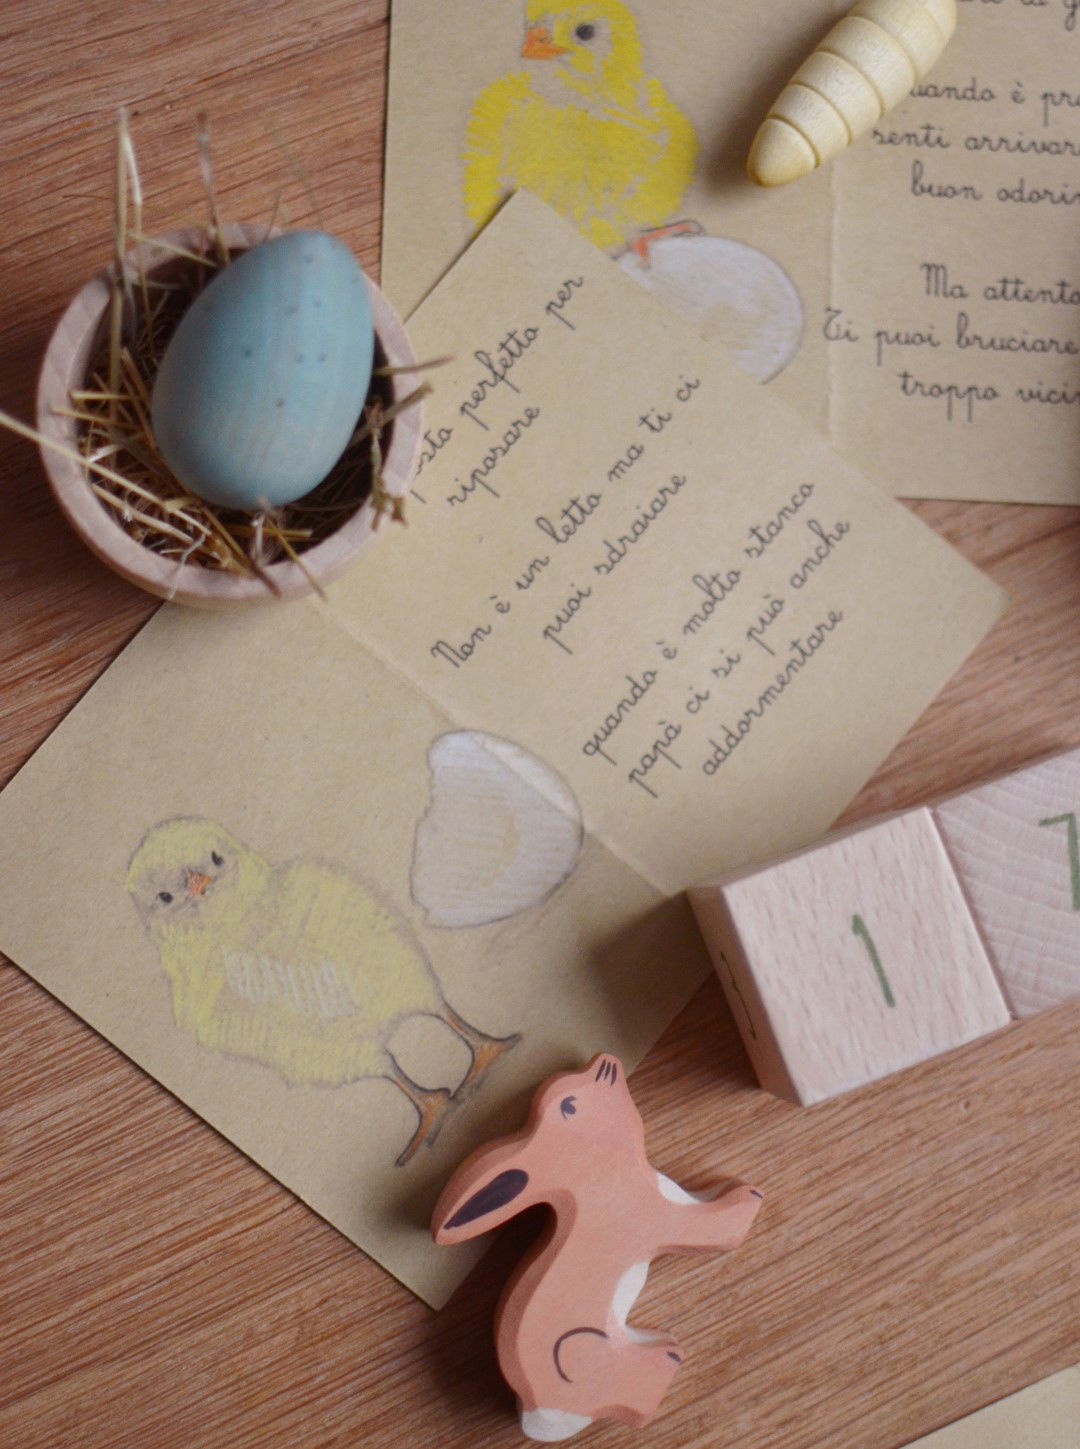 La caccia all'uovo di Pasqua: tante idee e piccoli pensieri -  Babookidsdesign